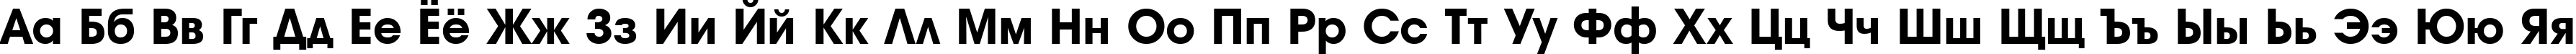 Пример написания русского алфавита шрифтом a_AvanteBs ExtraBold